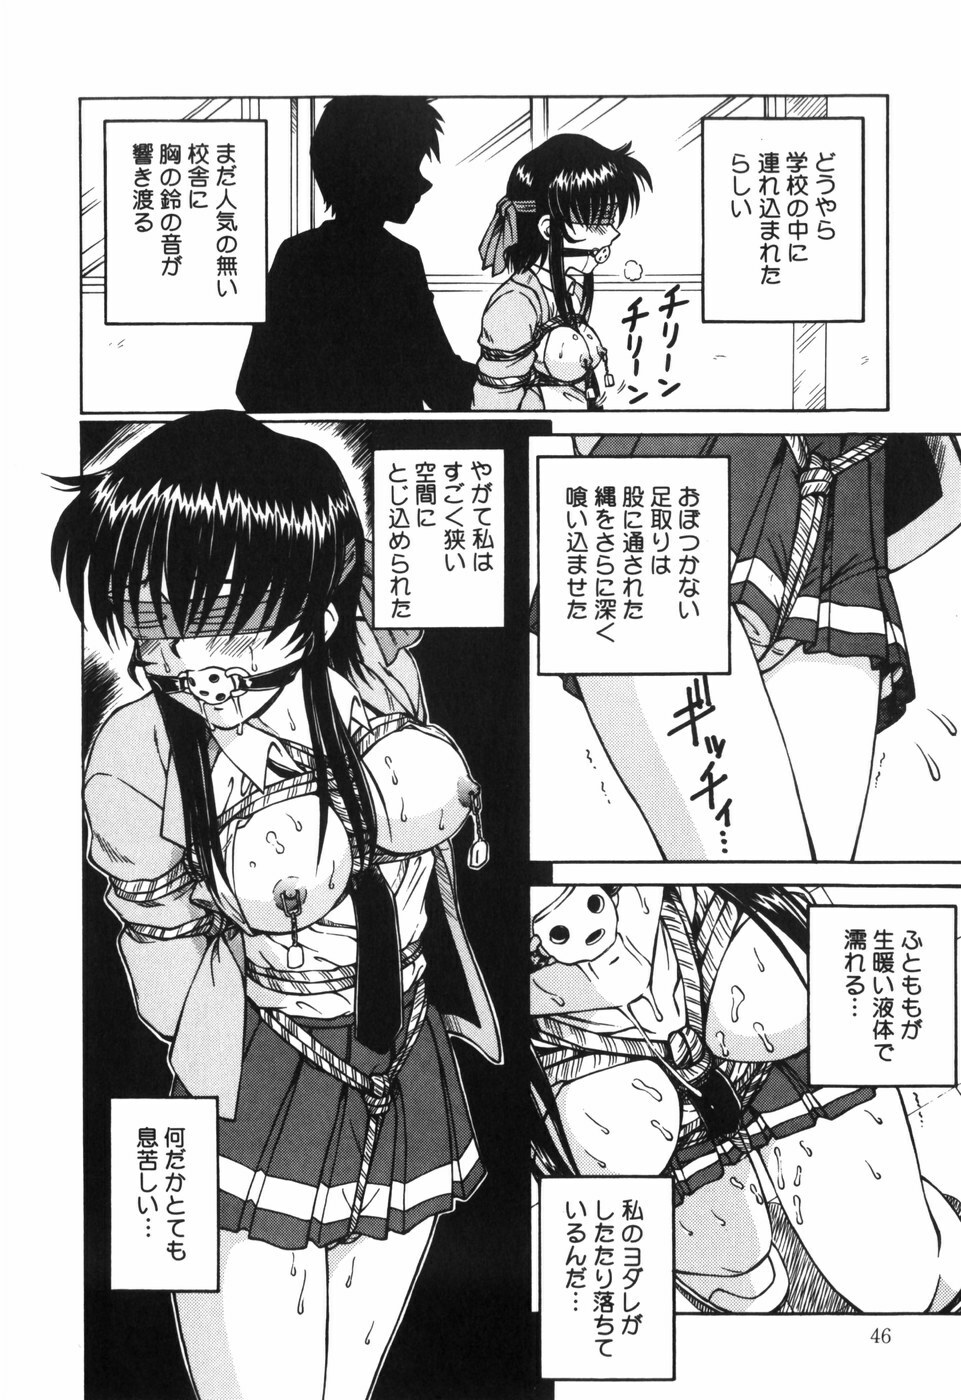 [Spark Utamaro] Shiru o Suu Nawa page 48 full